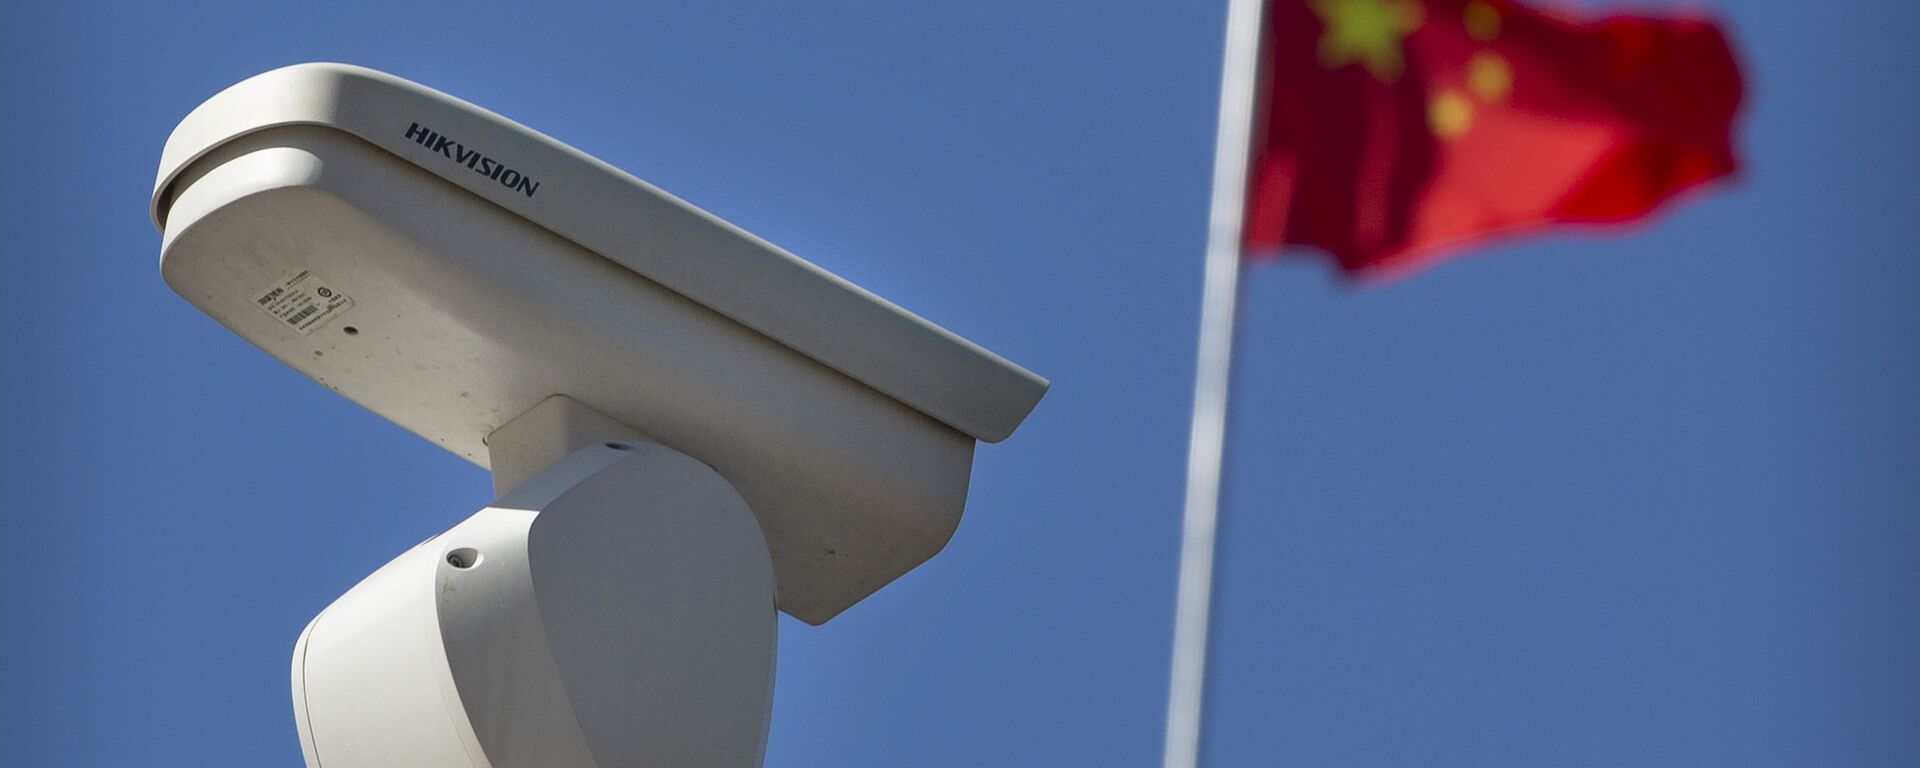 Una cámara de seguridad y la bandera china - Sputnik Mundo, 1920, 03.05.2021